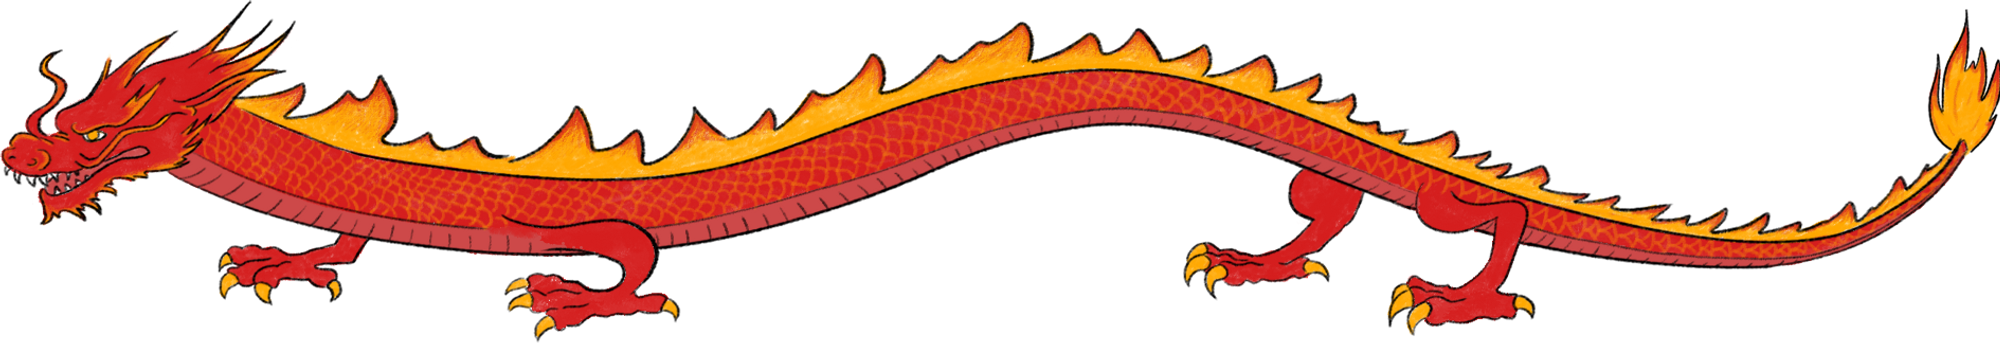 En illustrert drage med flammerygg.